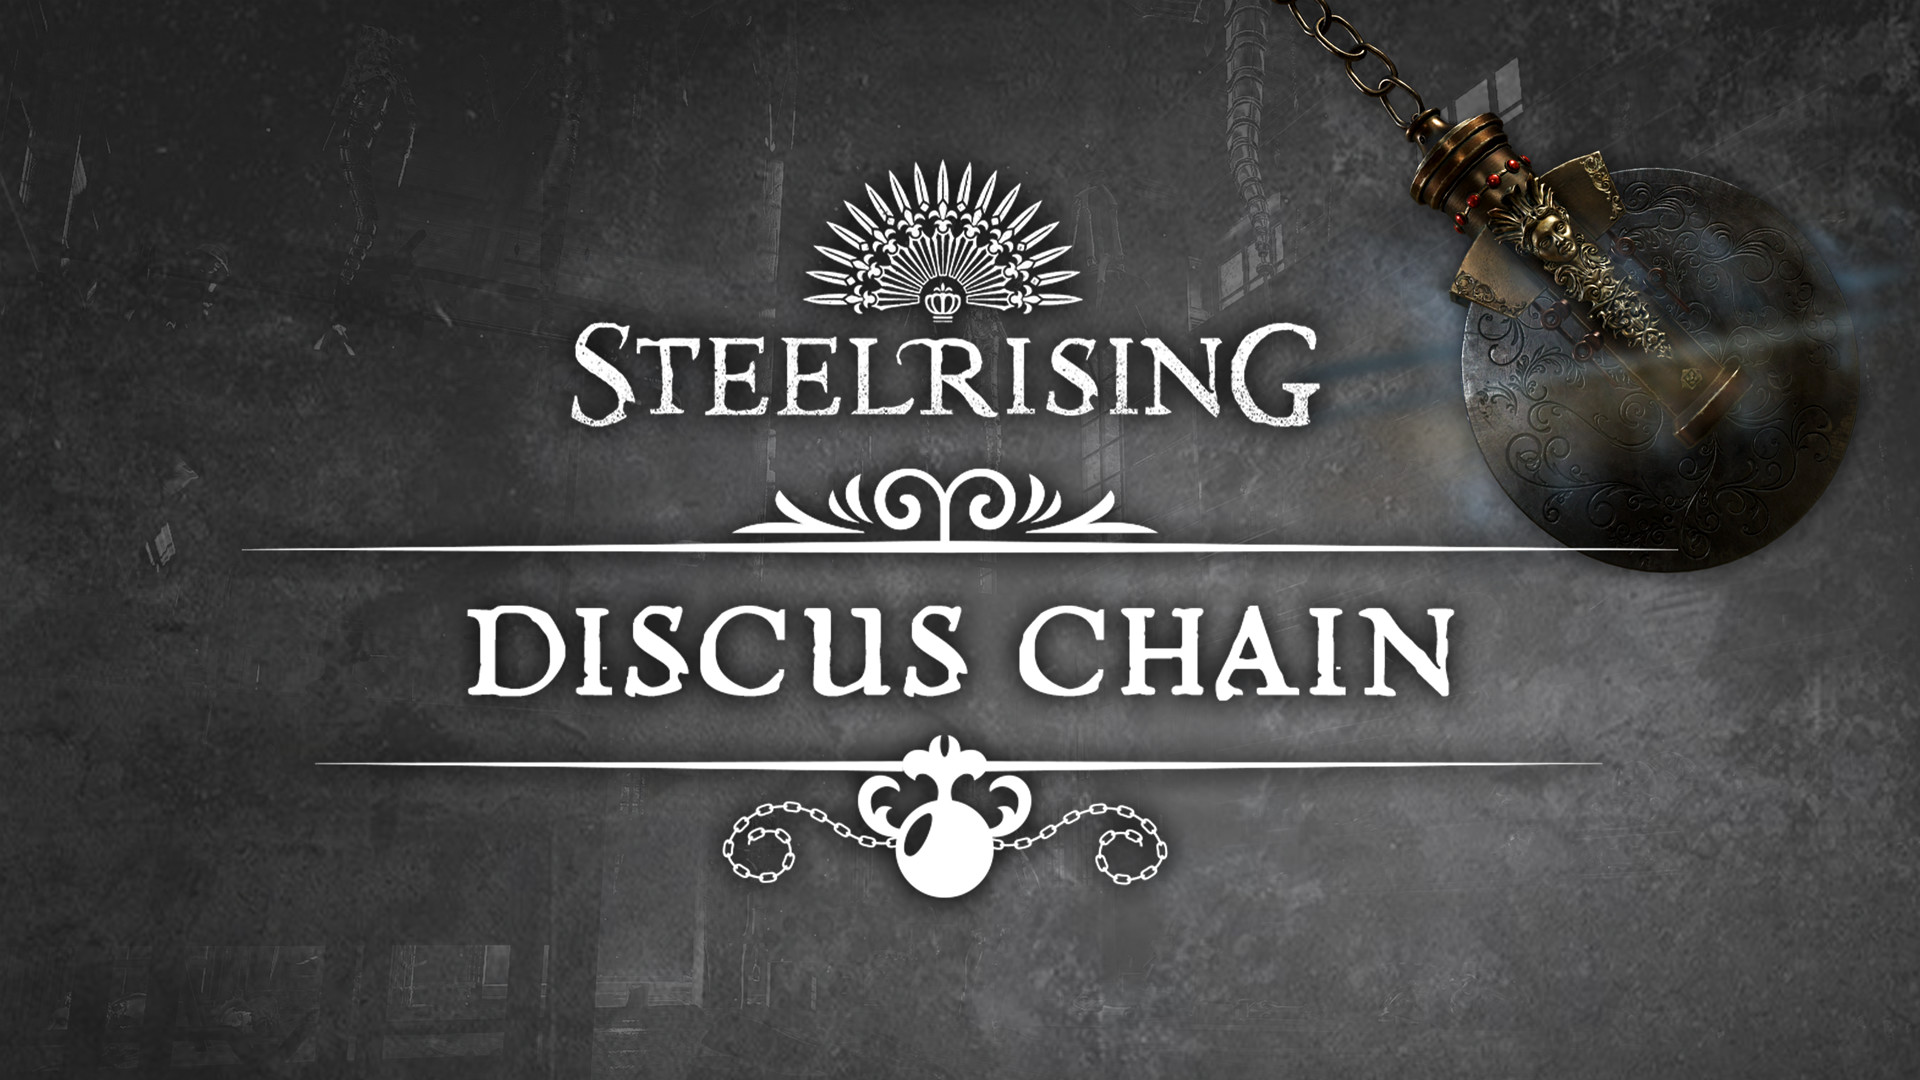 Steelrising - Discus Chain DLC Steam CD Key 0.76 $